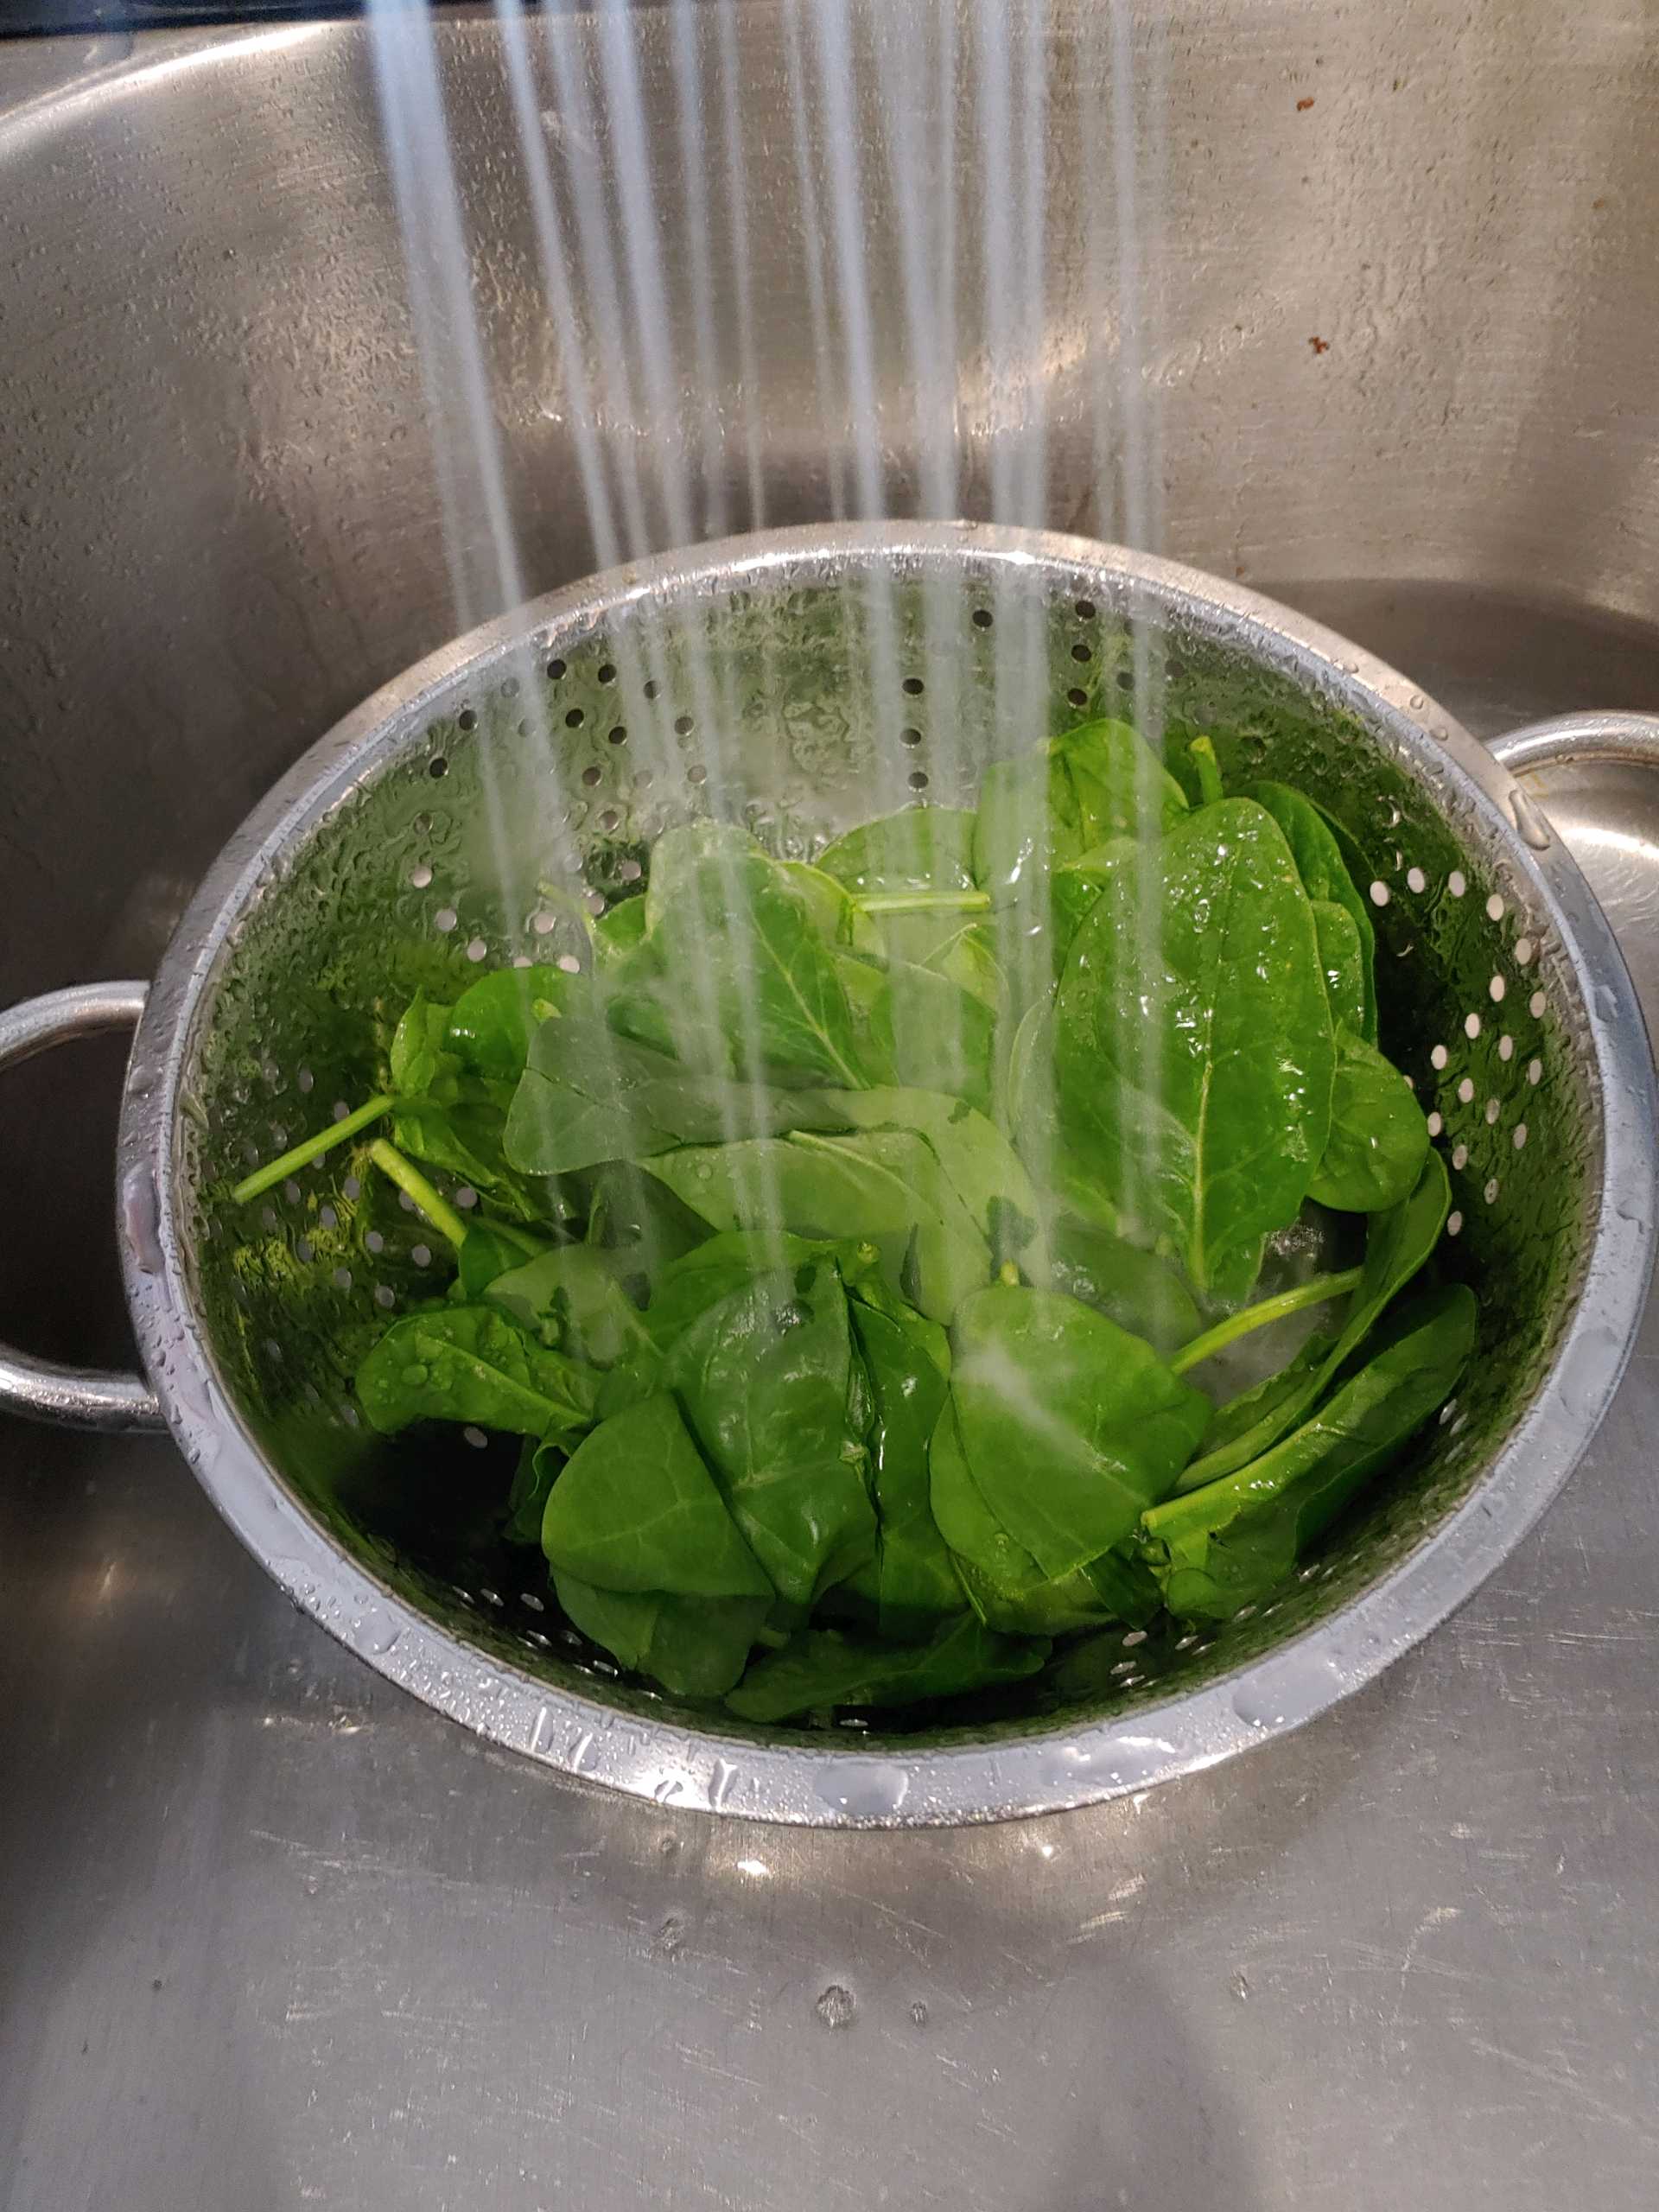 Spinach in colander in sink under running water.